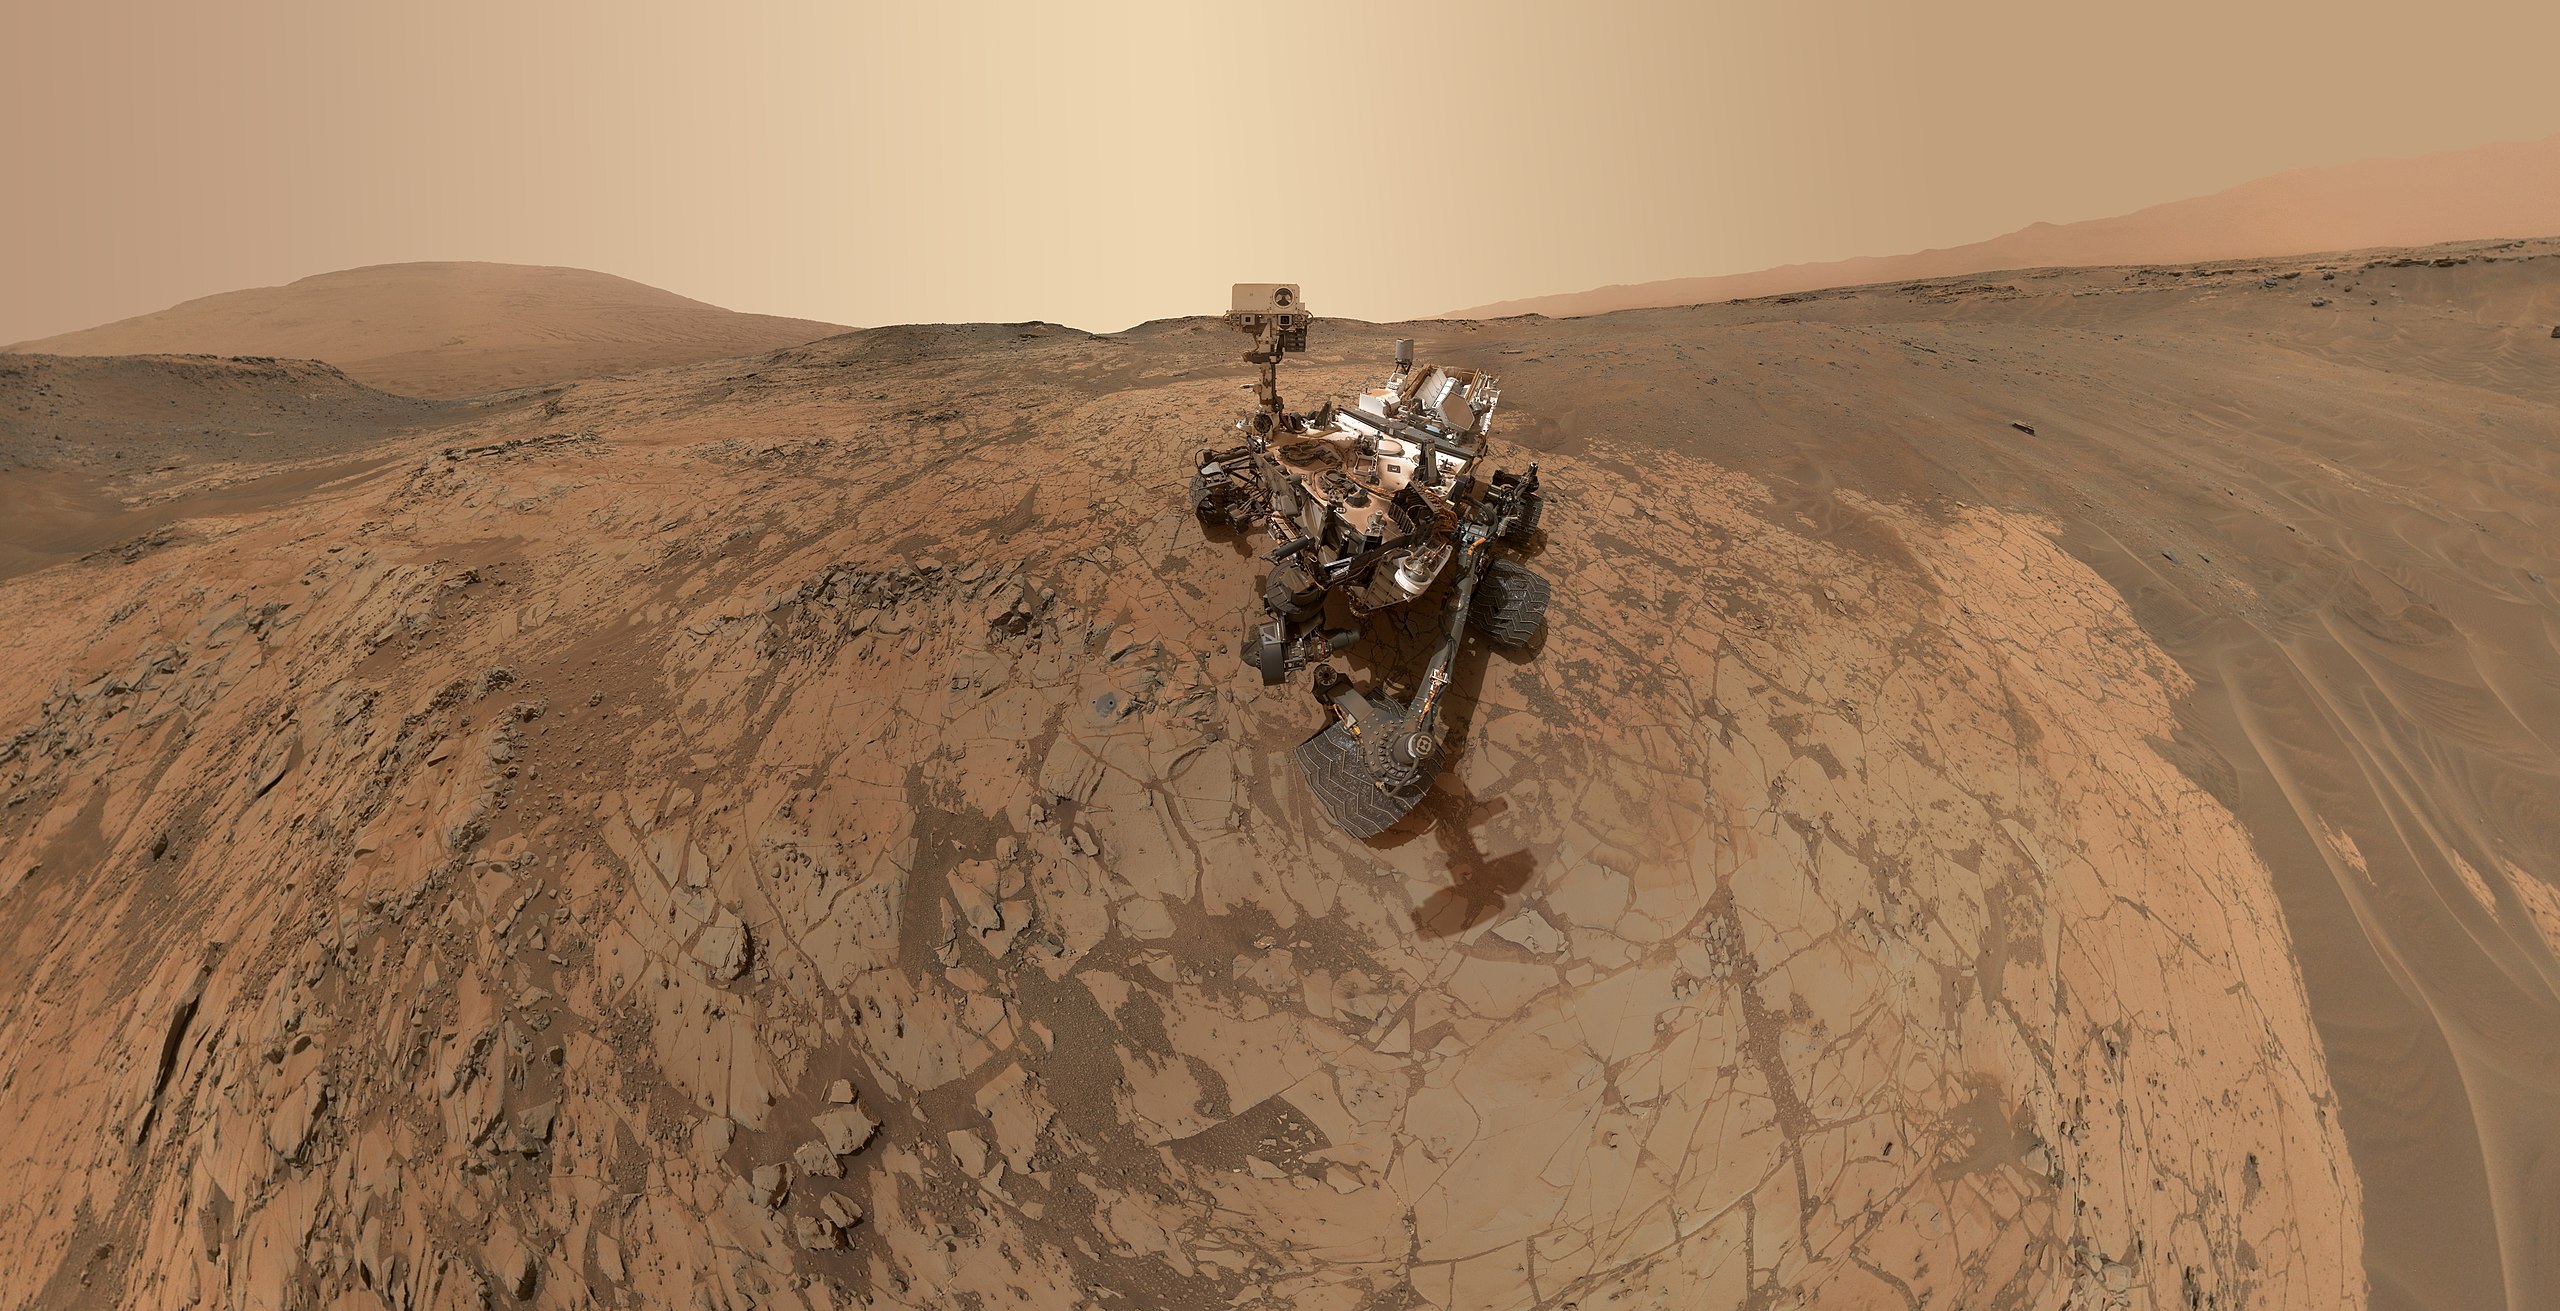 El robot Curiosity sobre la superficie de Marte. Foto: NASA/JPL-Caltech/MSSS 